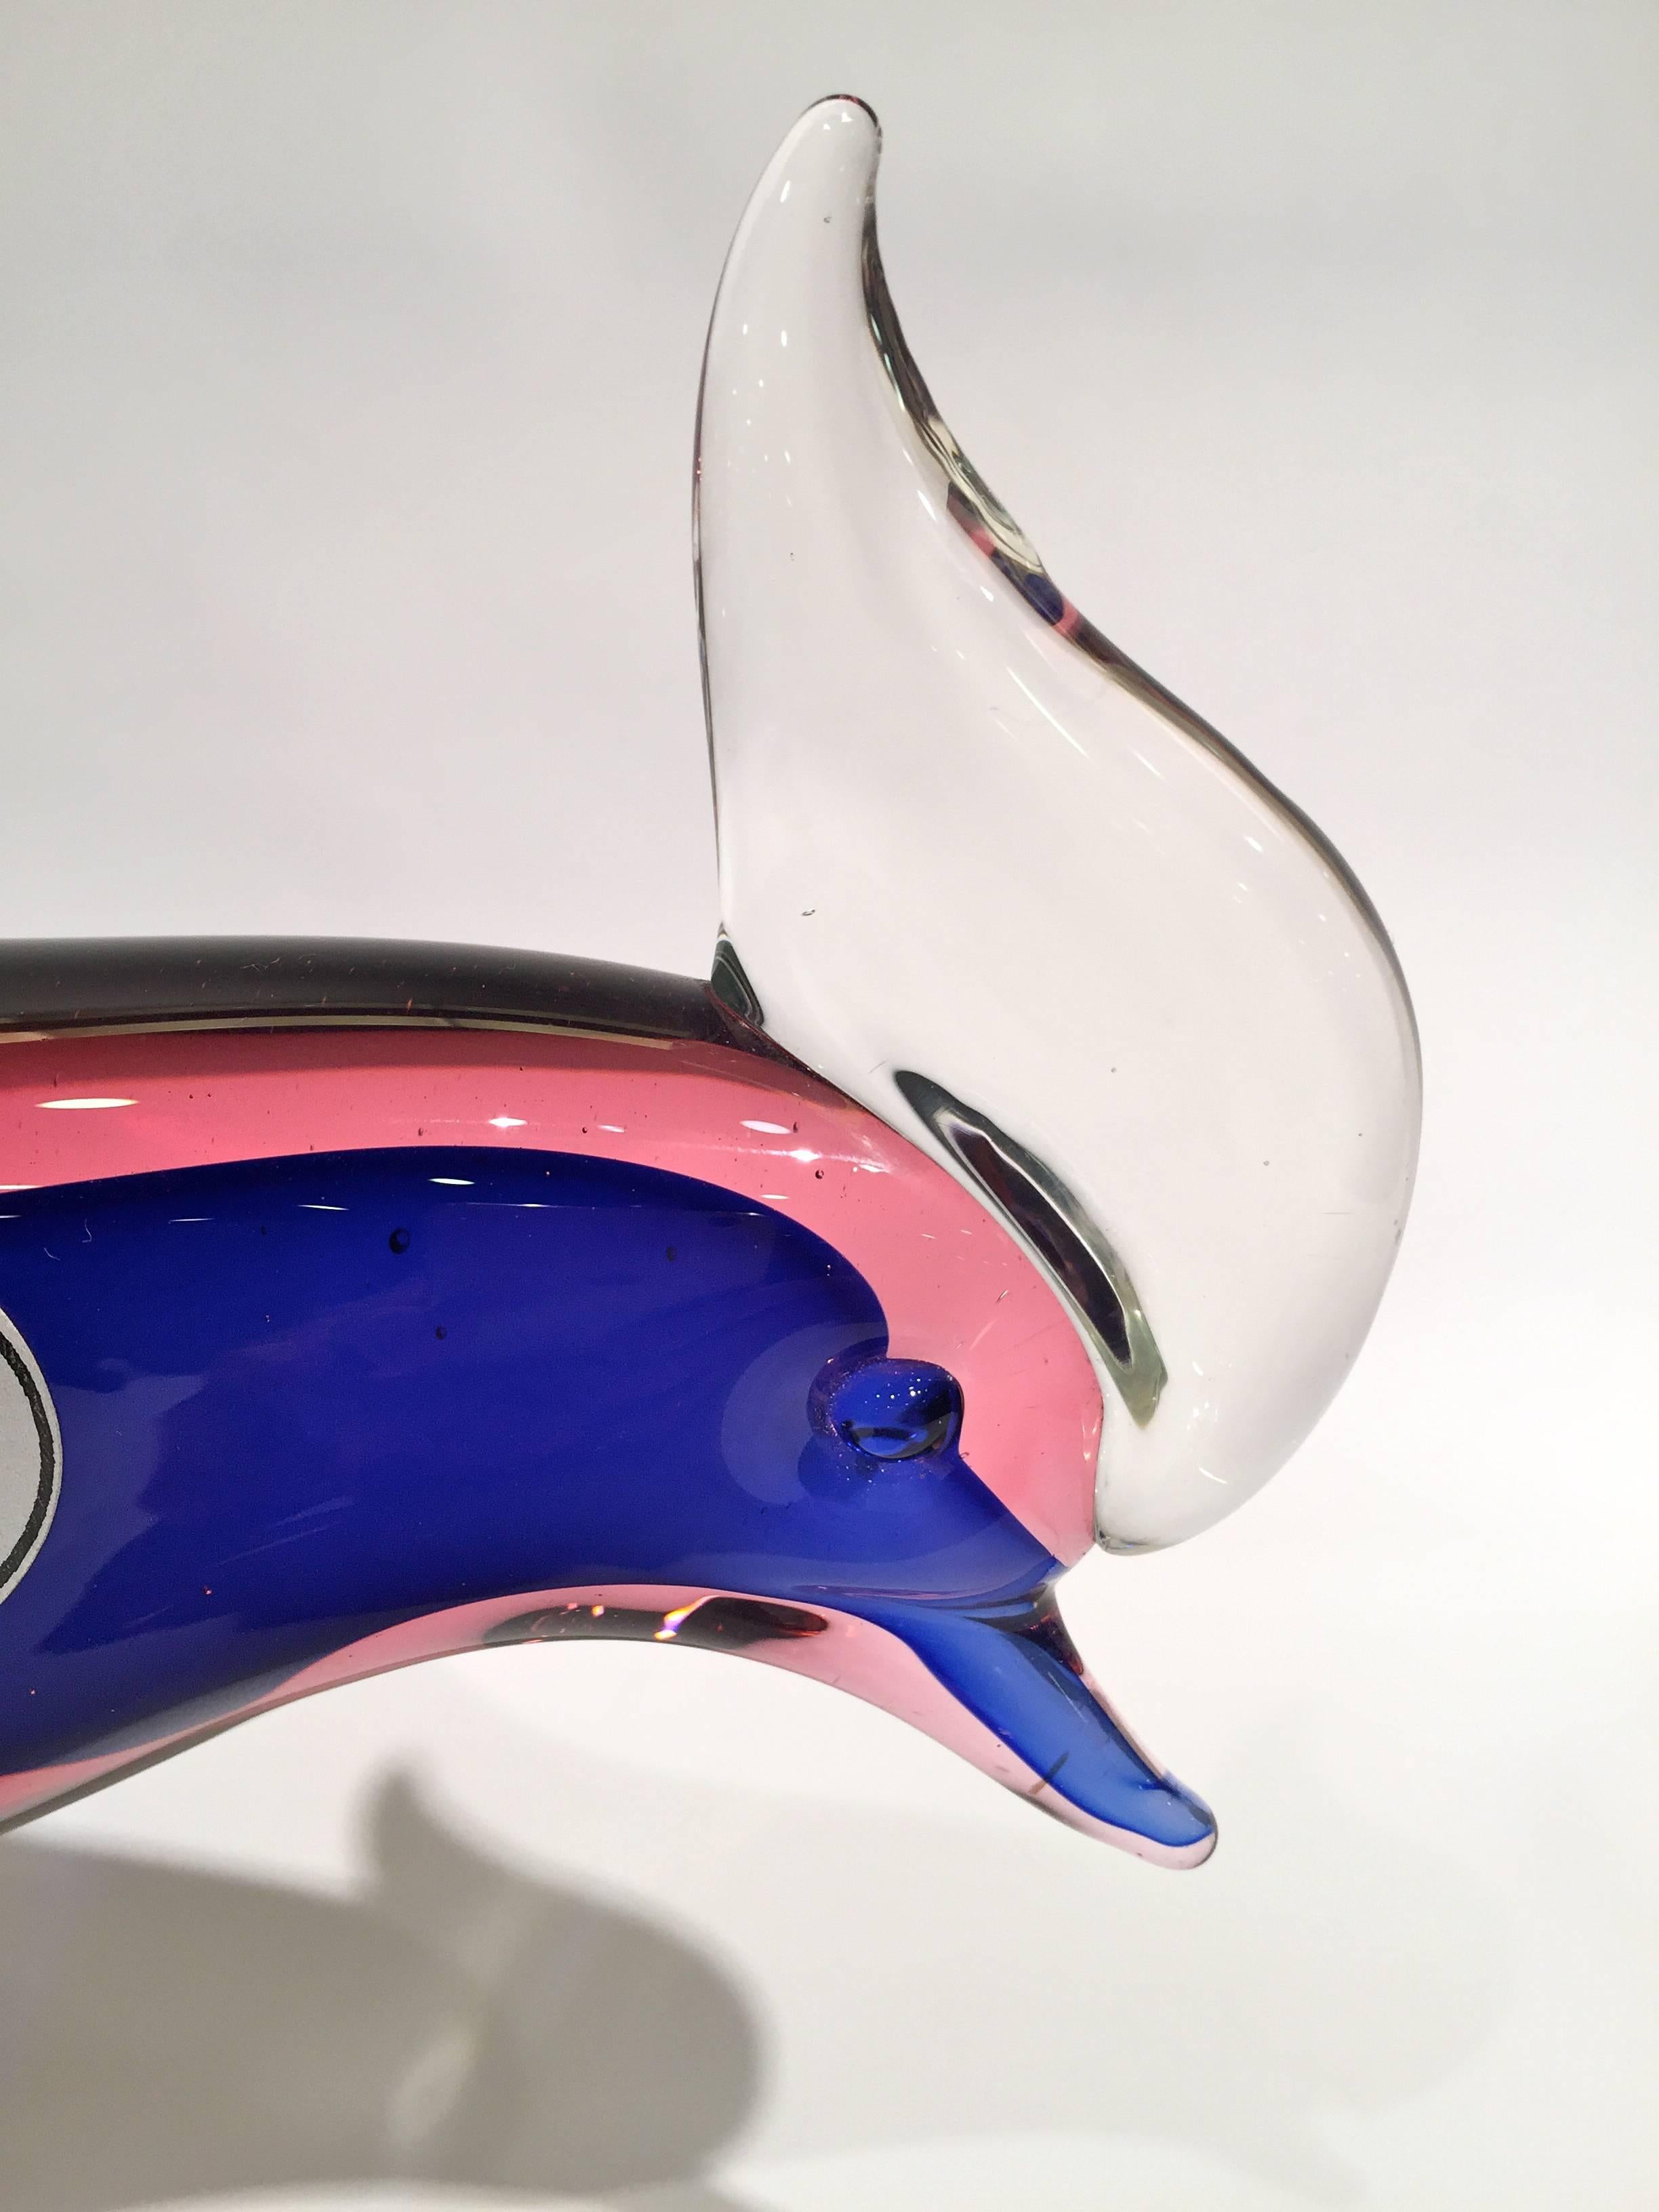 Archimede Seguso 1950 multi-color cock in Murano glass.